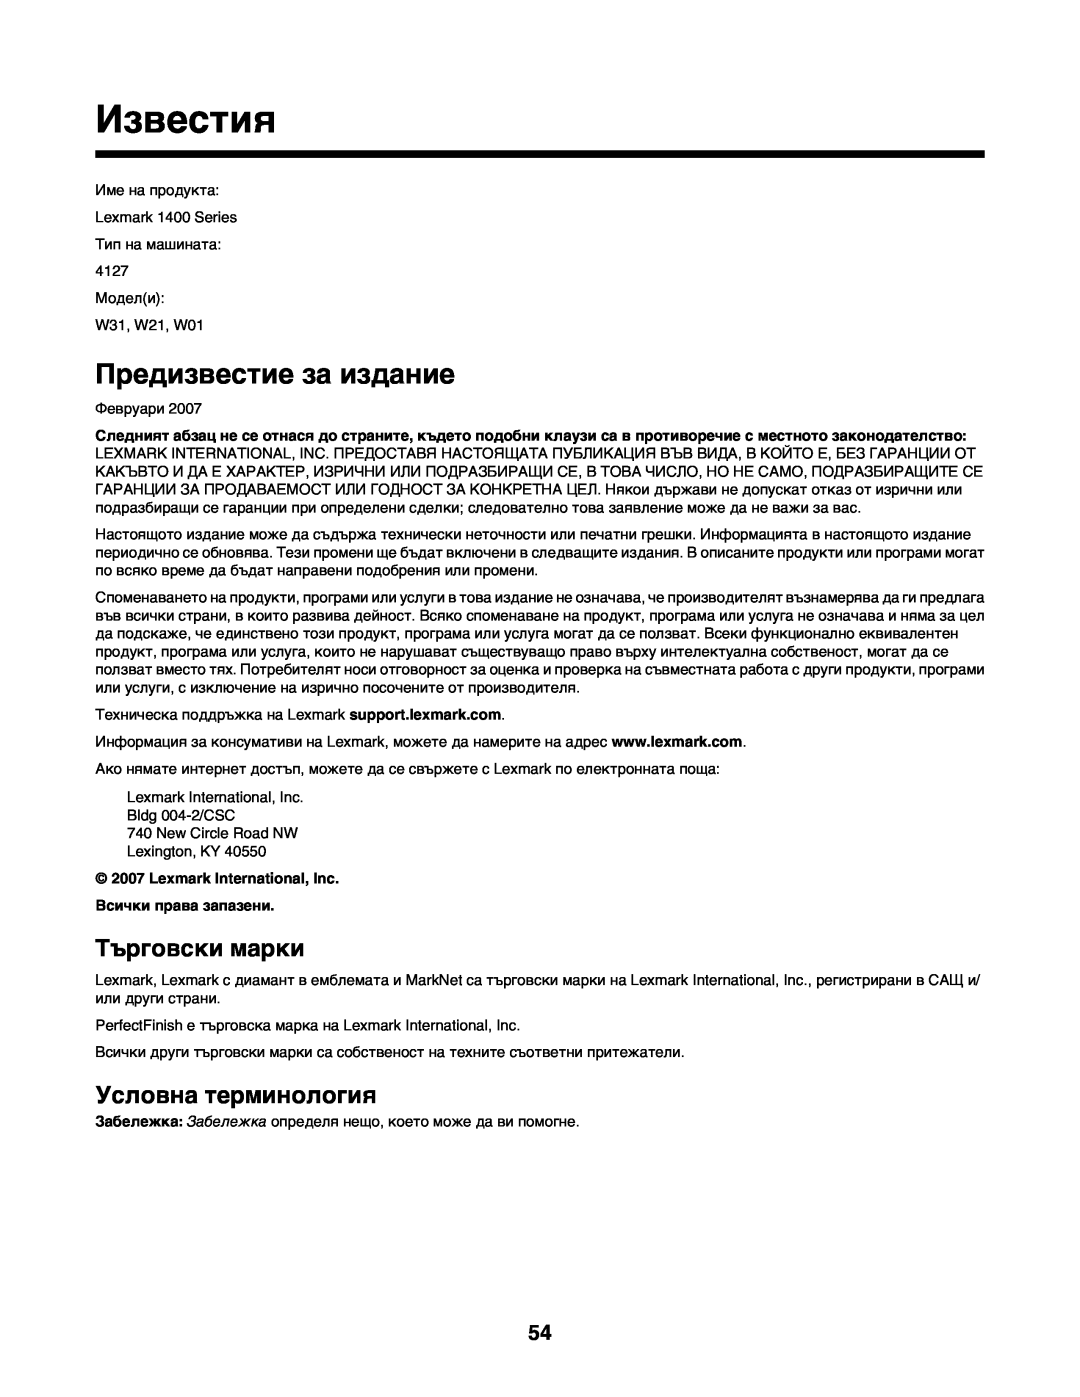 Lexmark 1400 manual Известия, Предизвестие за издание, Търговски марки, Условна терминология 